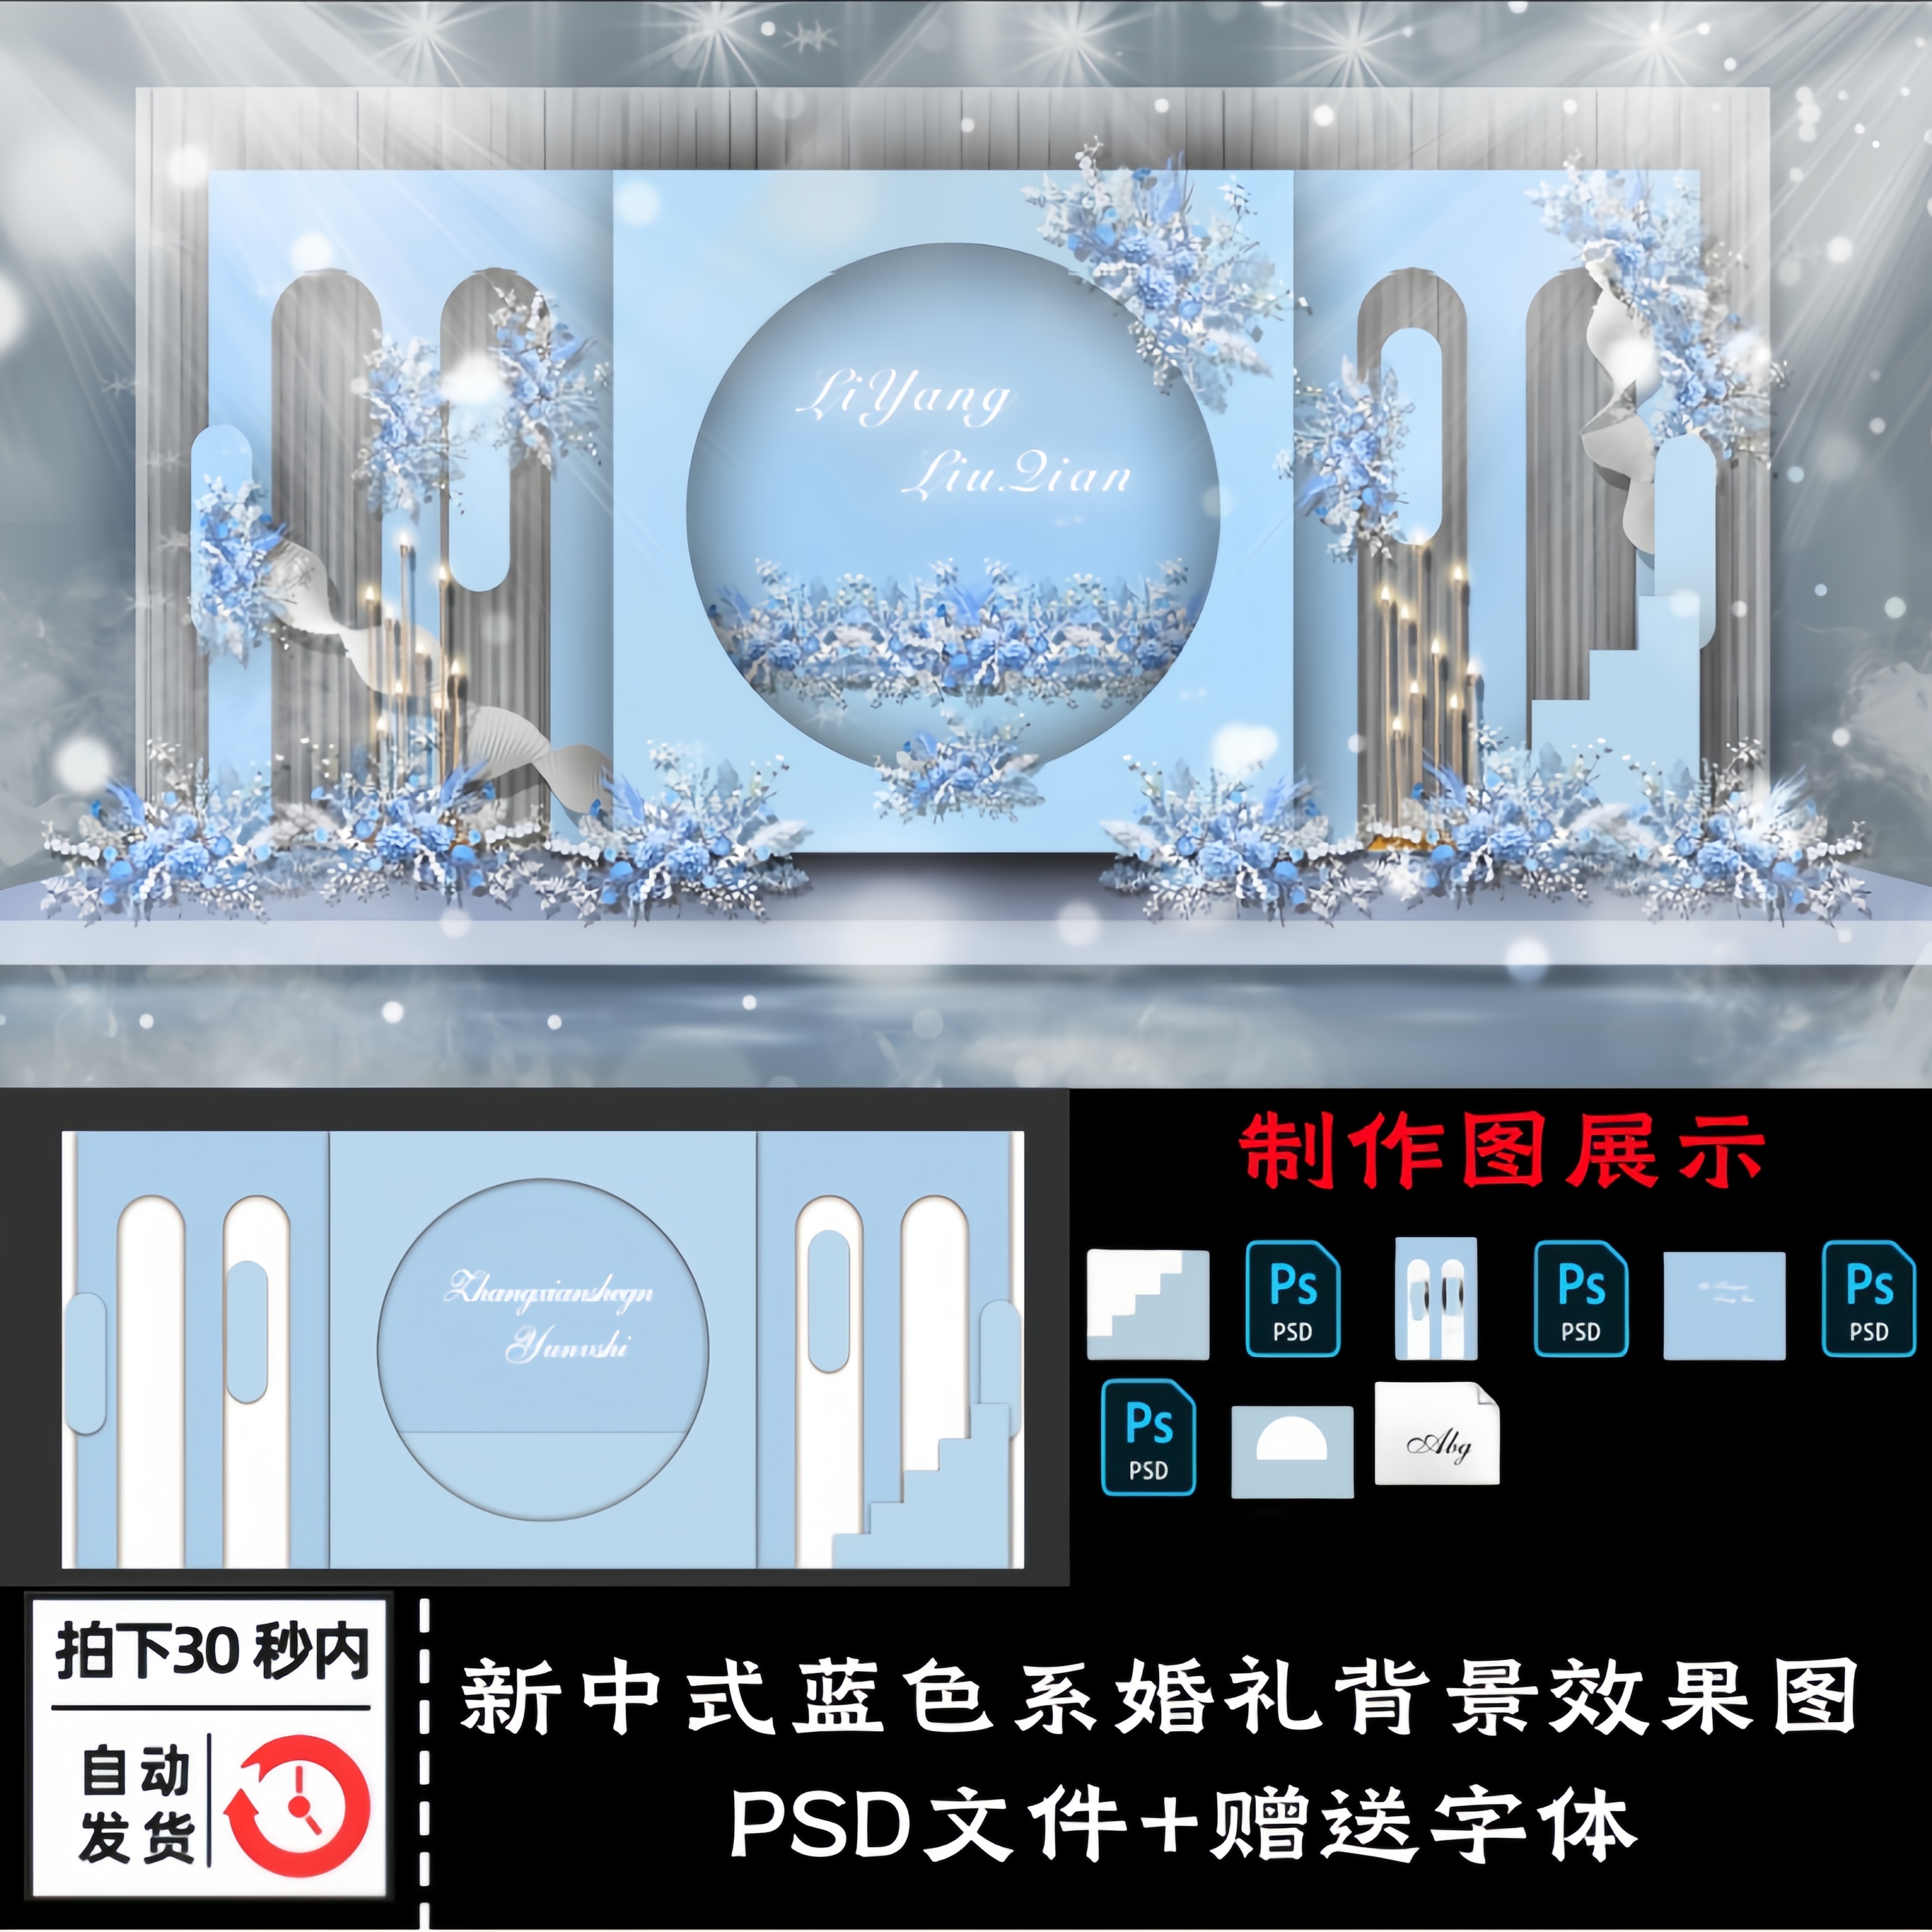 新中式蓝色海洋系婚礼背景墙婚庆现场布置KT板效果图PSD设计素材